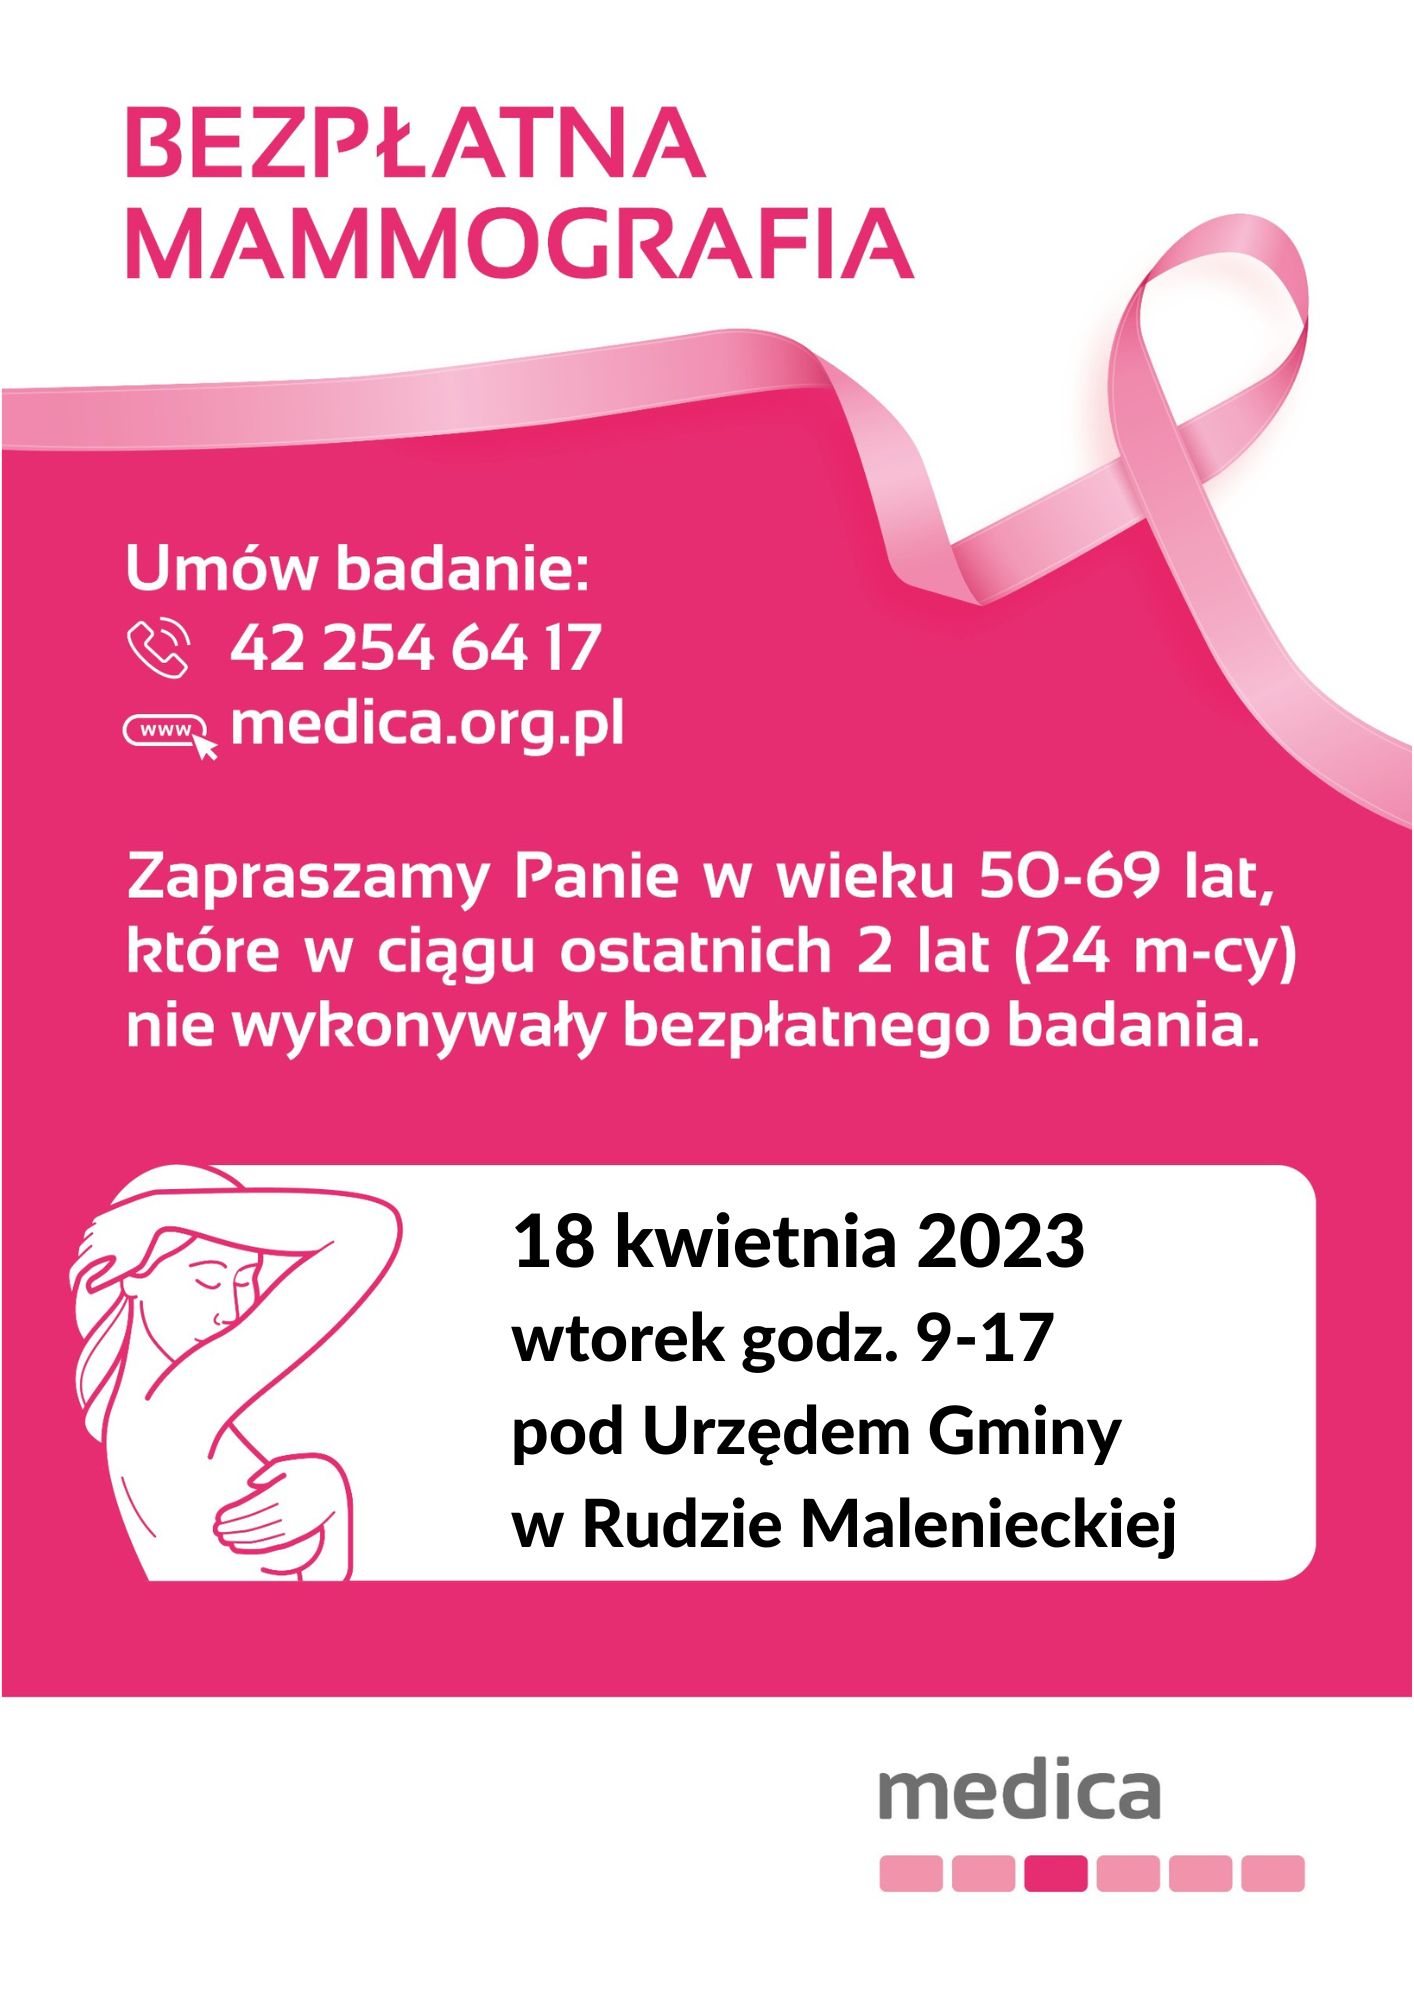 Plakat zawiera informacje dotyczące przeprowadzenia bezpłatnych badań mammograficznych. Badanie ma odbyć się w dniu 18 kwietnia 2023r. na parkingu przed Urzędem Gminy w Rudzie Malenieckiej, Ruda Maleniecka 99A. Na badanie mogą zgłaszać się Panie w wieku 50 -69 lat, które w ciągu ostatnich 2 lat (24 miesięcy) nie wykonywały bezpłatnego badania mammograficznego. Ponadto na plakacie jest podany numer telefonu (42) 254-64-17 oraz adres strony www: medica.org.pl, pod którymi można zarejestrować się na niniejsze badanie.